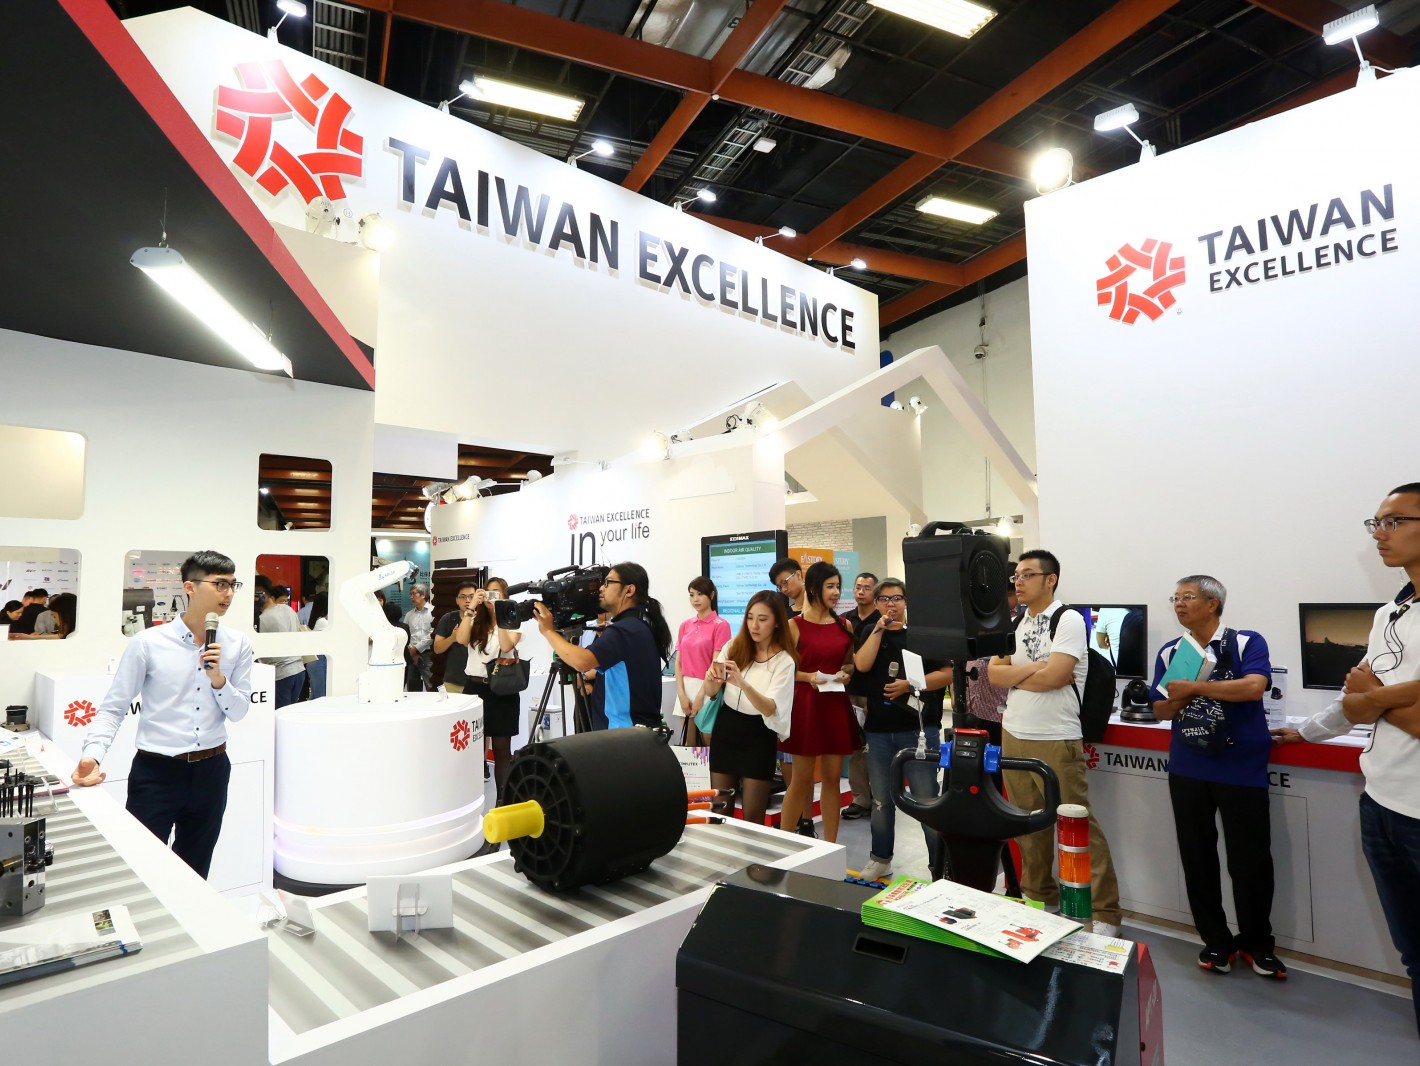 Taiwan Excellence Pavilion @ WCIT 2017